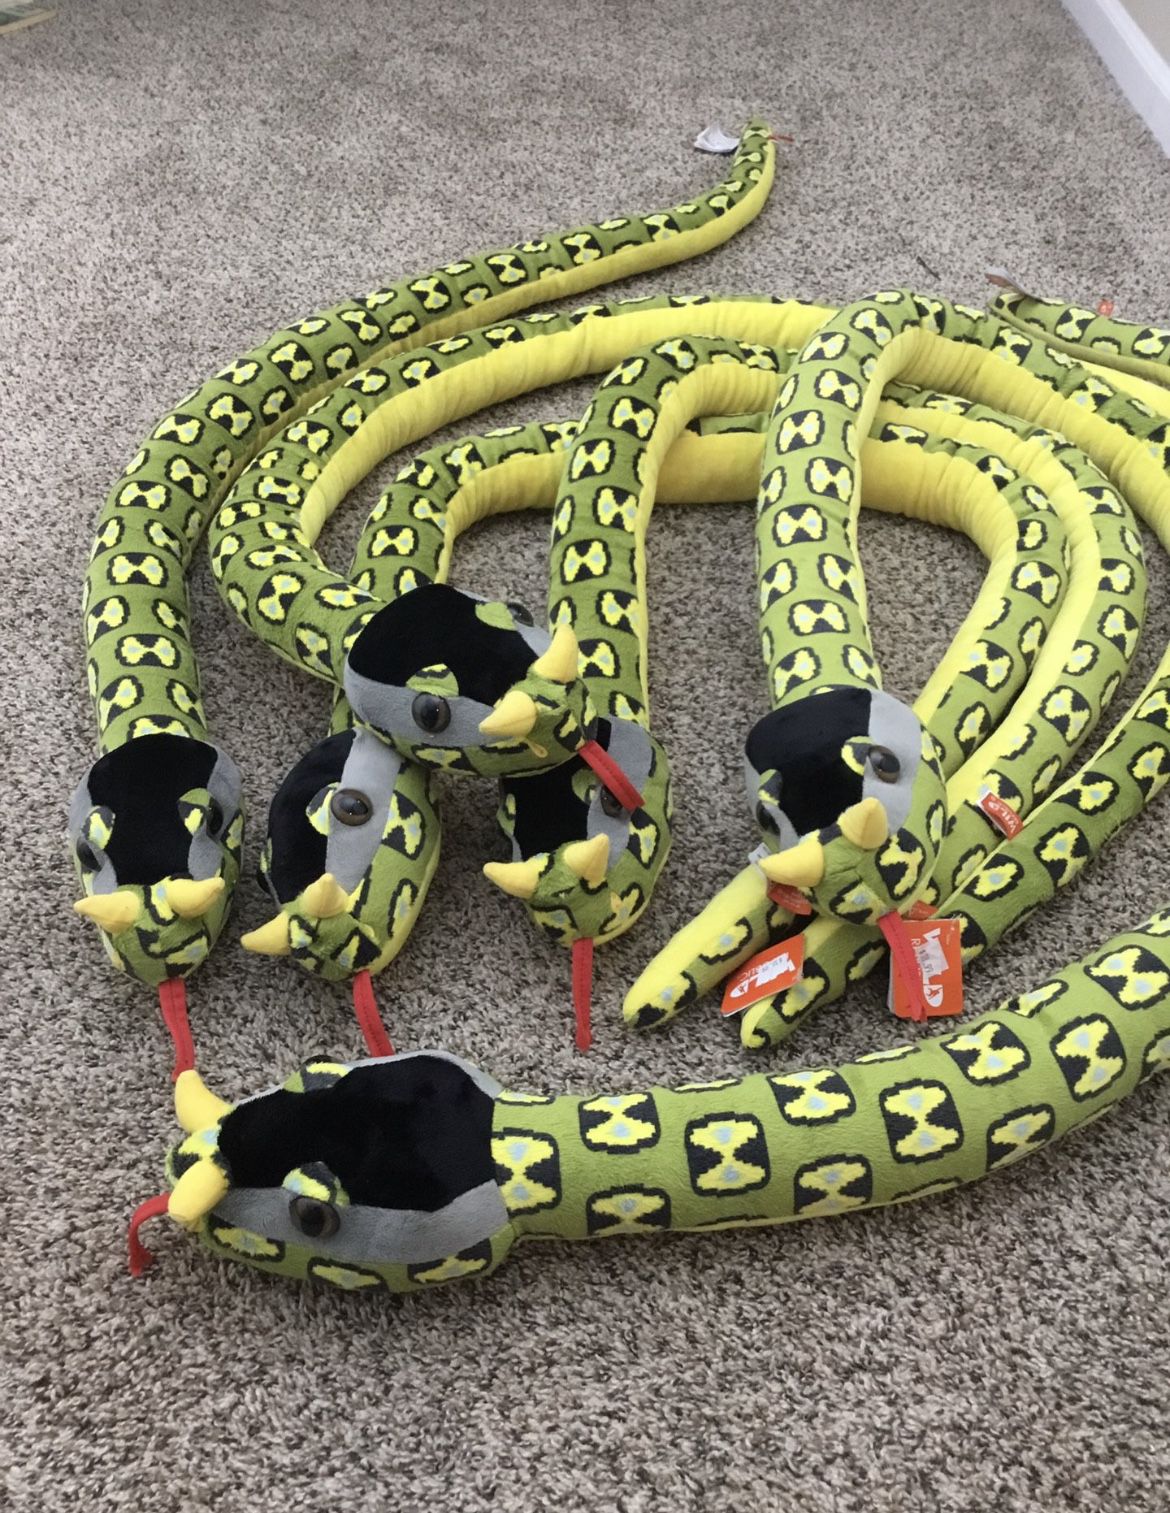 Horned Snake Stuffed Animal (Brand New)